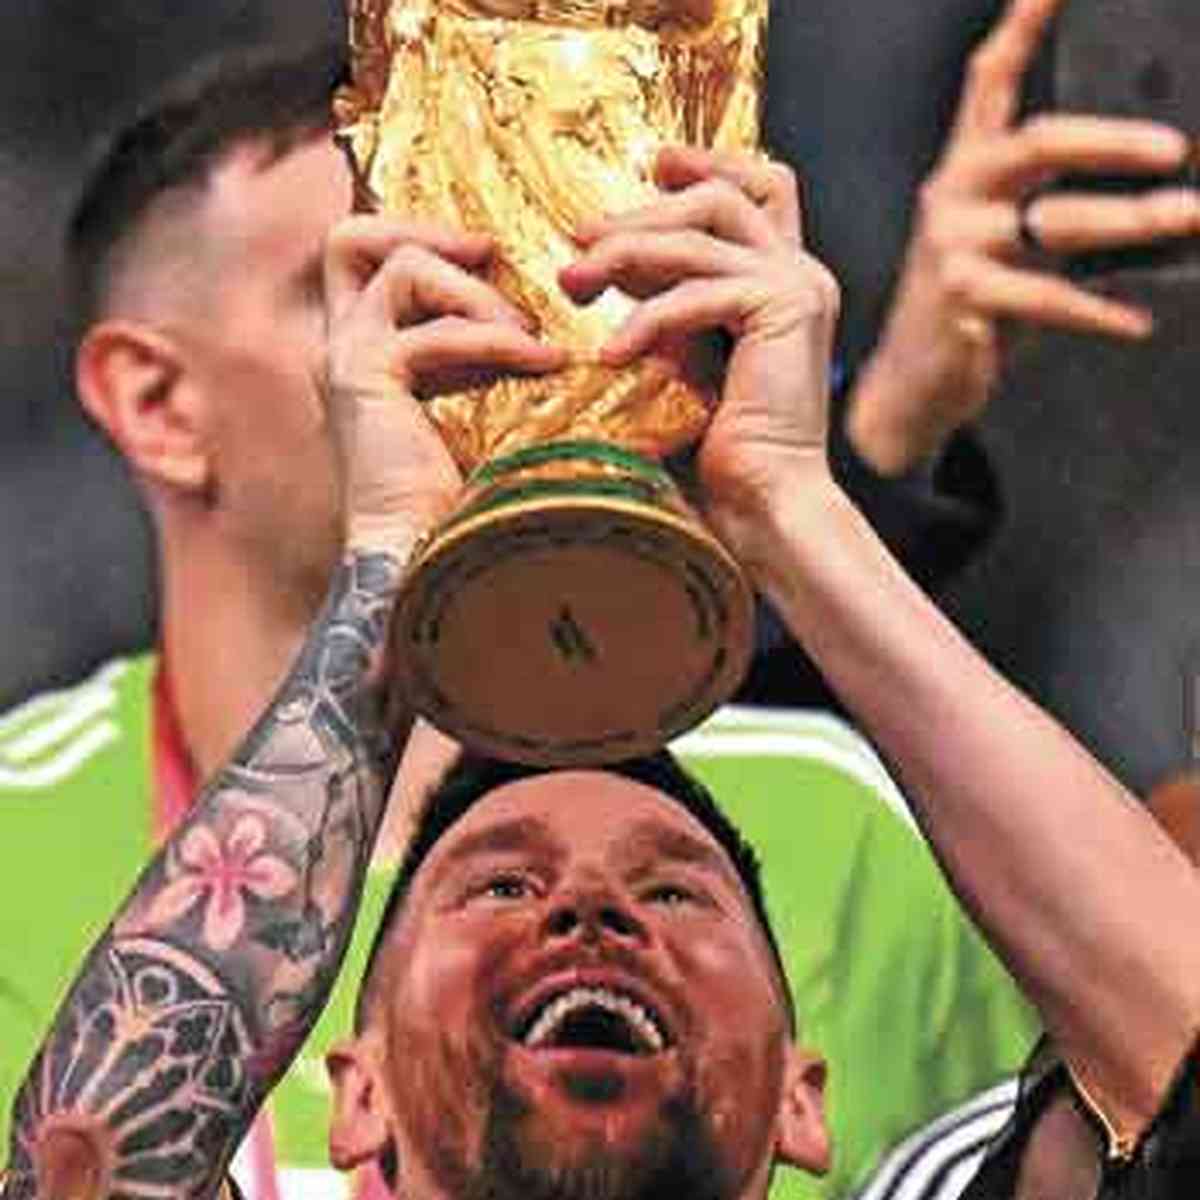 Lionel Messi levanta a taça de campeão do mundo no seu último Mundial